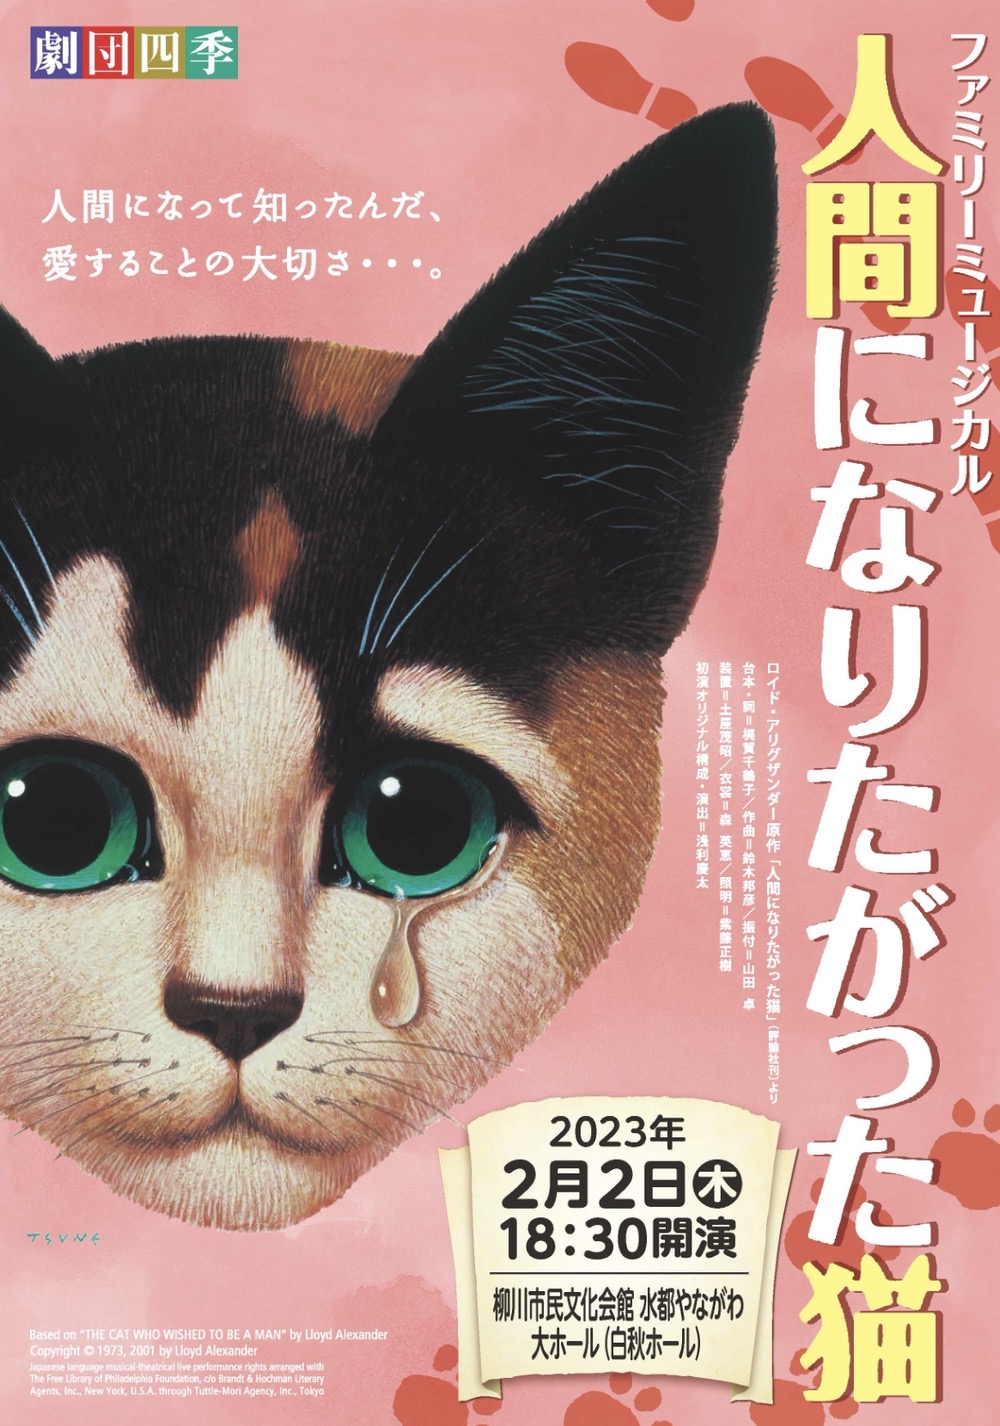 劇団四季「人間になりたがった猫」柳川市民文化会館で開催